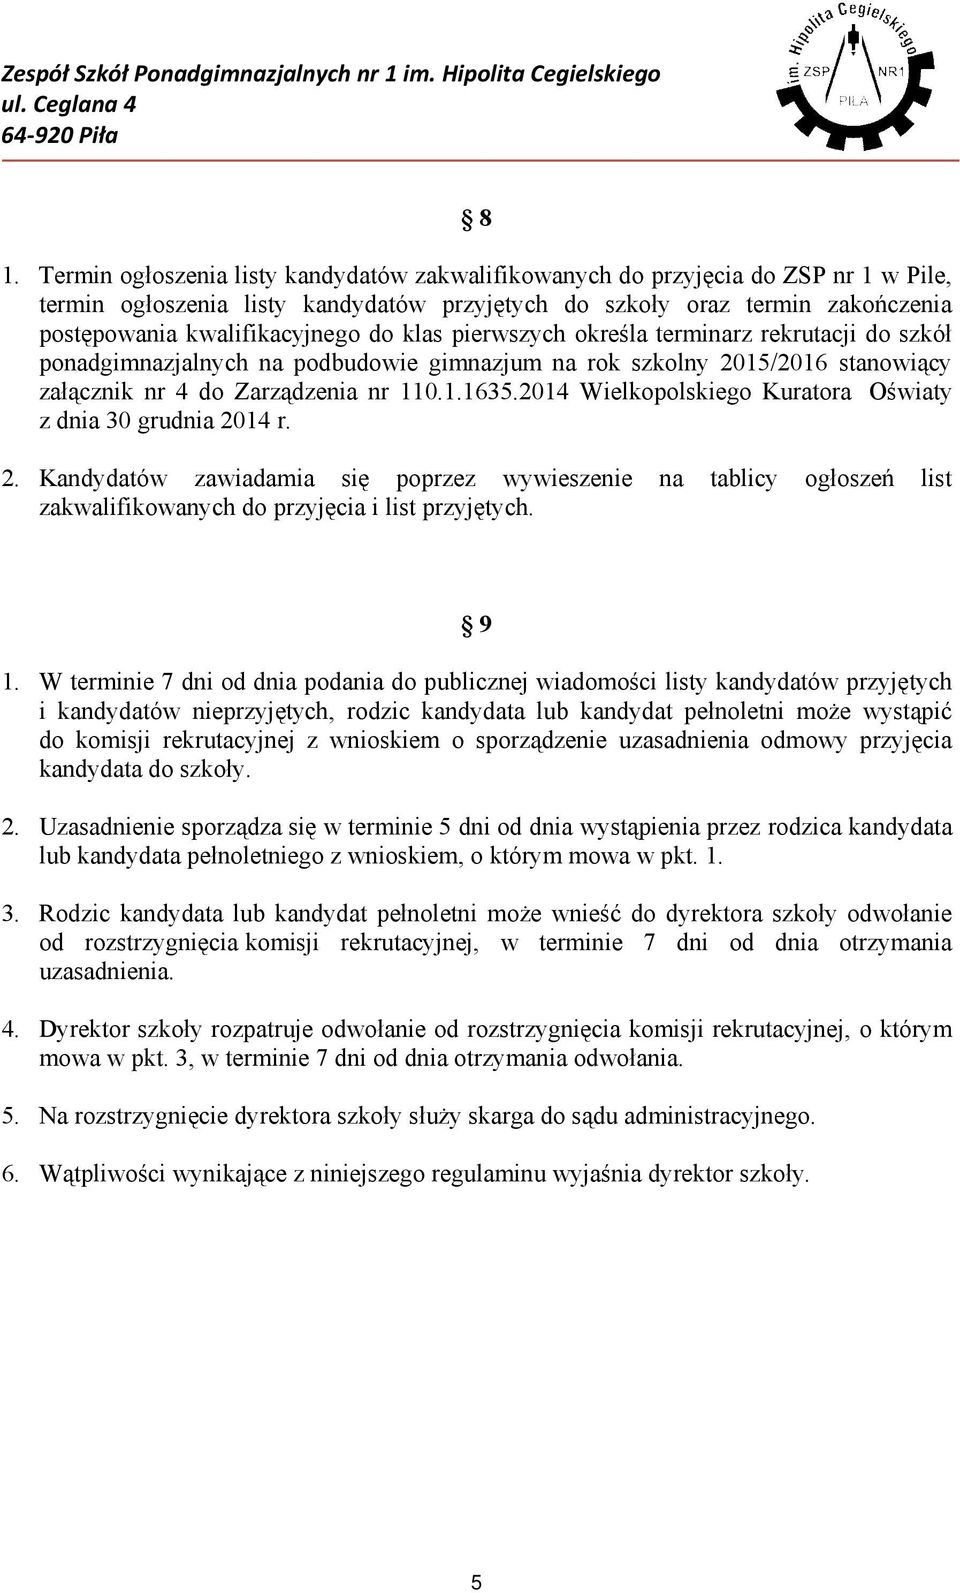 2014 Wielkopolskiego Kuratora Oświaty z dnia 30 grudnia 2014 r. 2. Kandydatów zawiadamia się poprzez wywieszenie na tablicy ogłoszeń list zakwalifikowanych do przyjęcia i list przyjętych. 9 1.